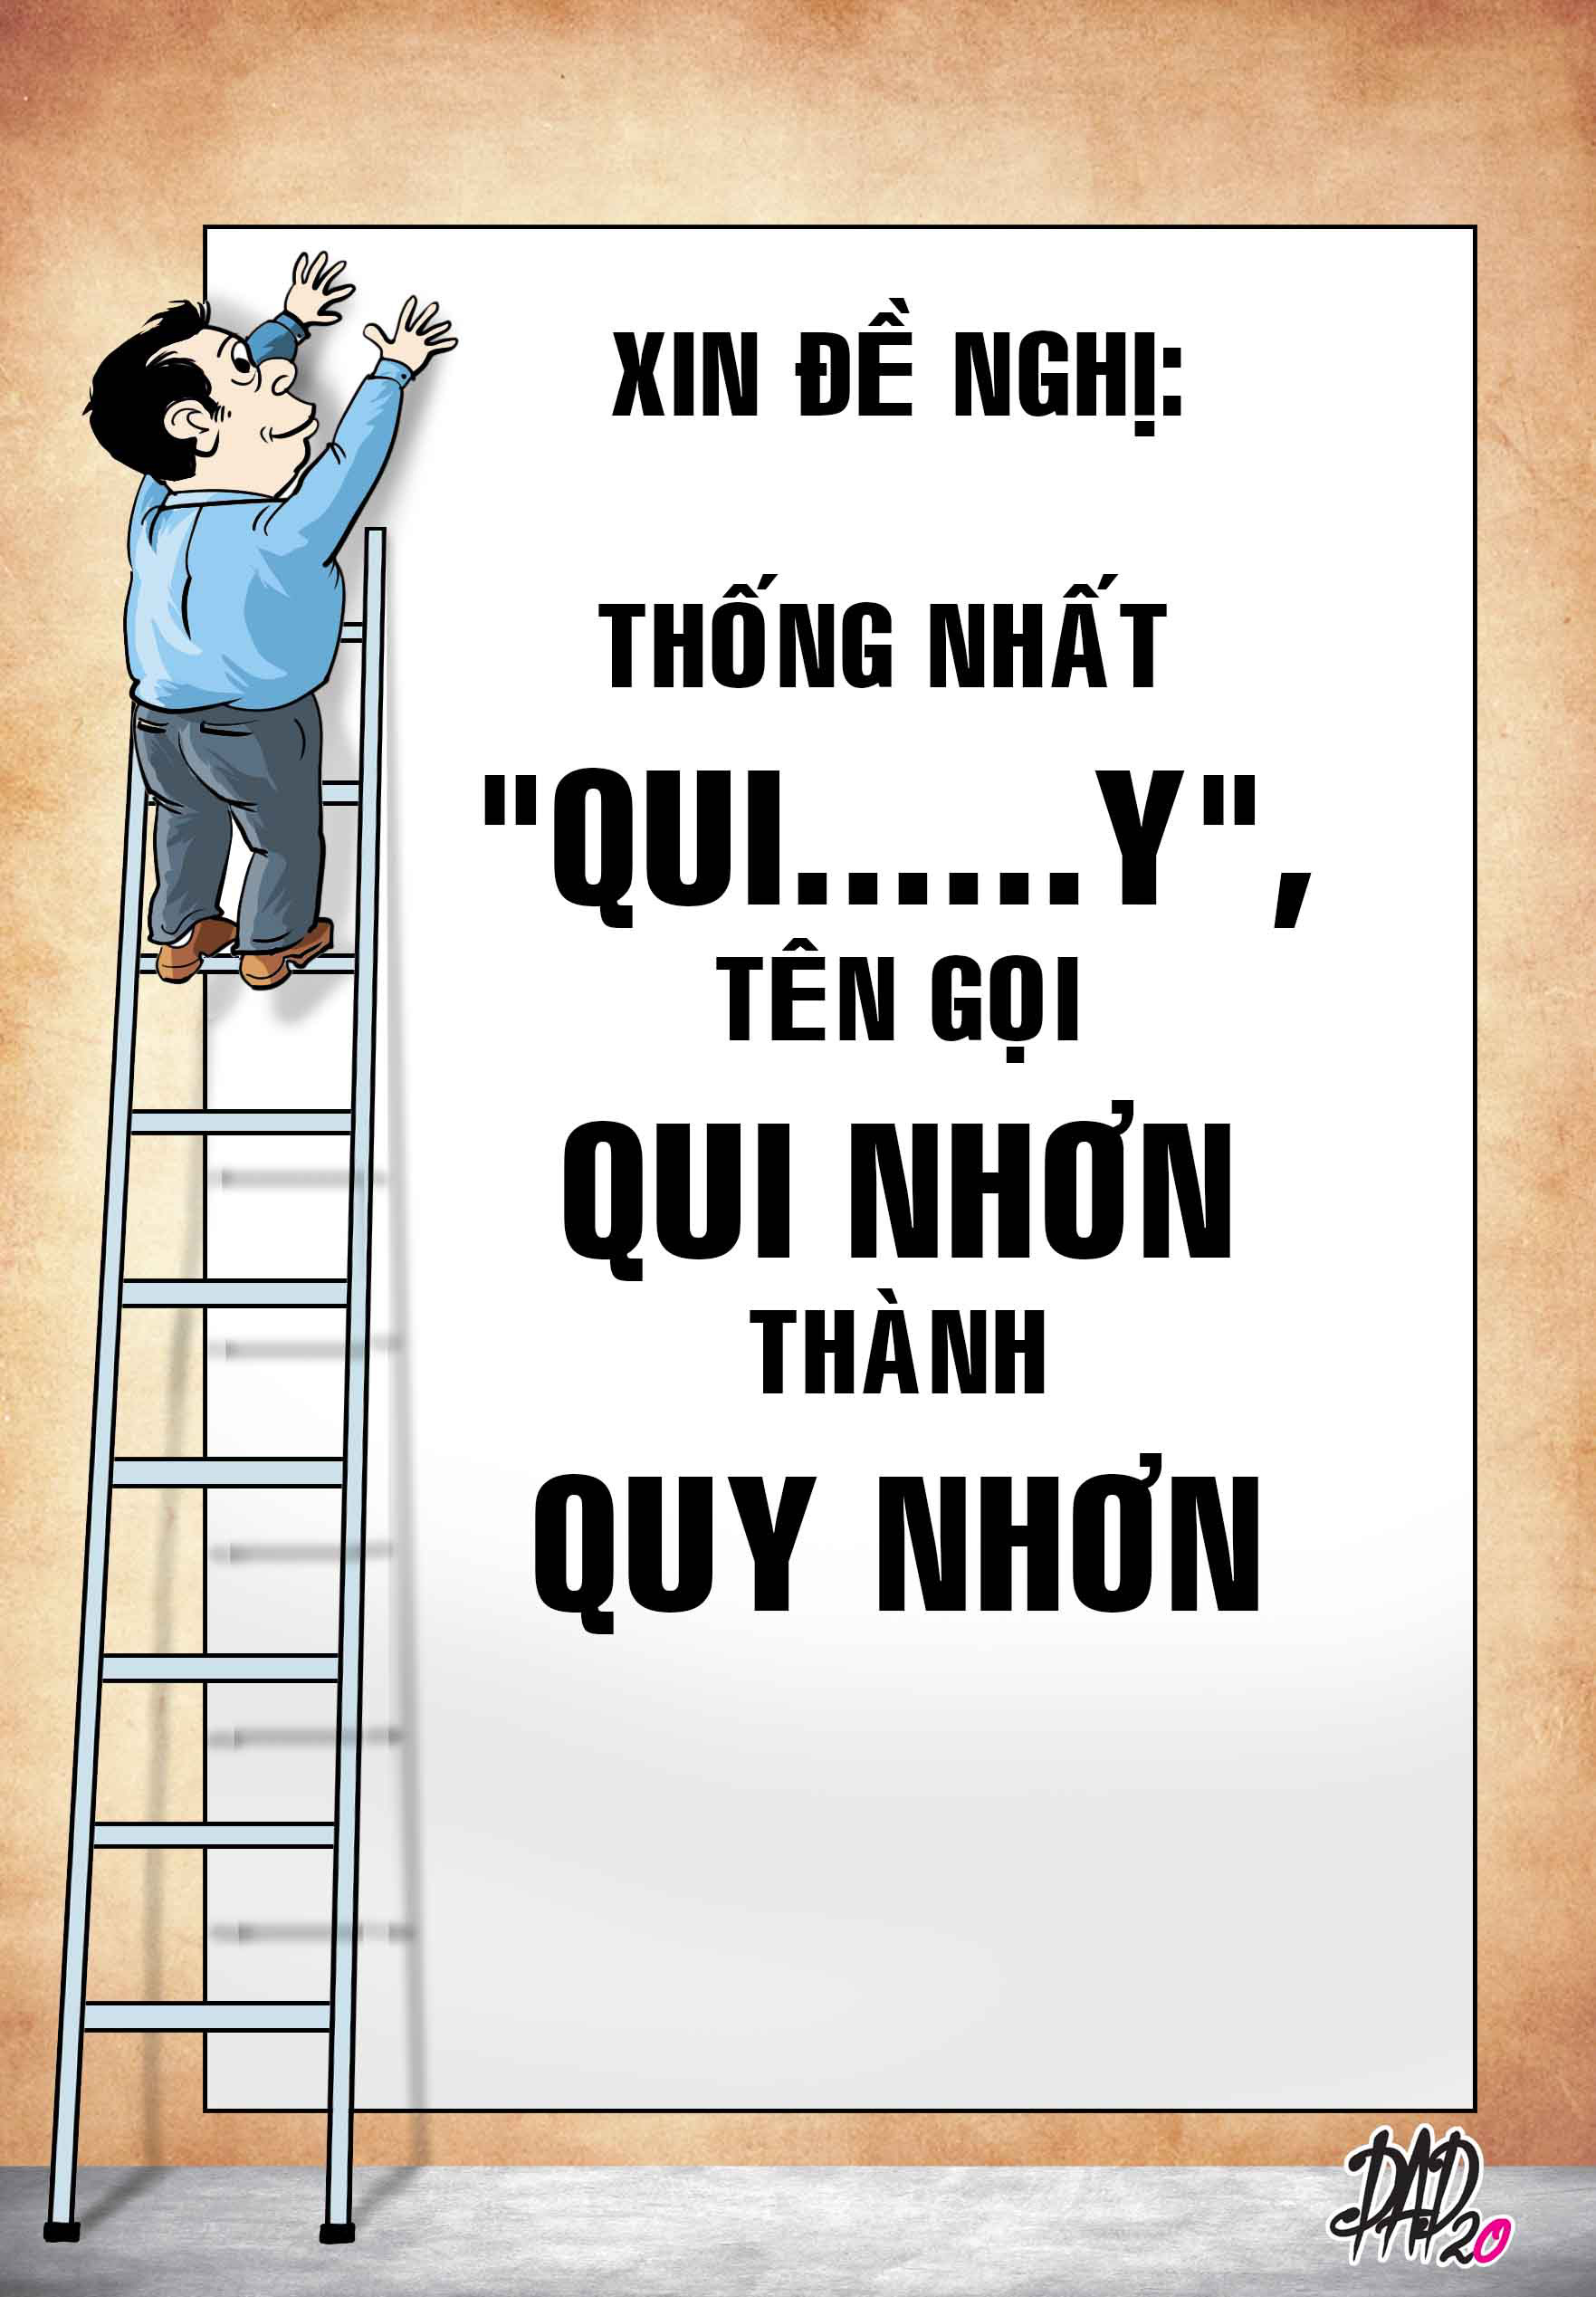 Vì sao đổi tên thành phố Qui Nhơn thành Quy Nhơn?